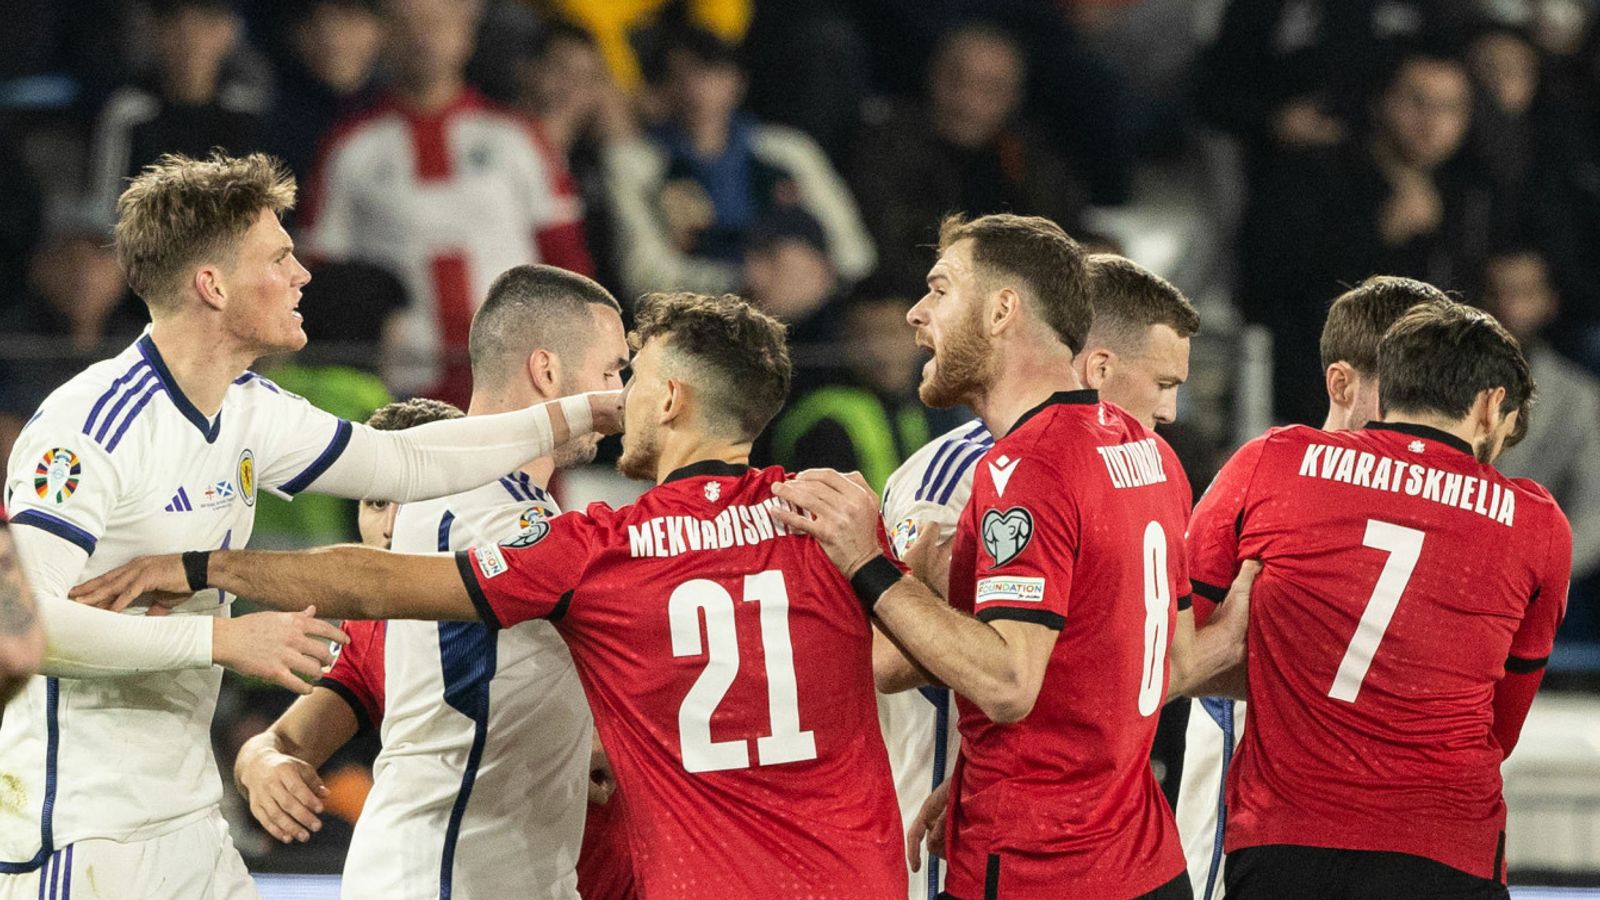 Скотт Мактоминей: Полузащитник «Манчестер Юнайтед» назвал игроков сборной Грузии «плаксами» во время жеребьевки отборочного турнира Евро-2024 в Шотландии |  футбольные новости